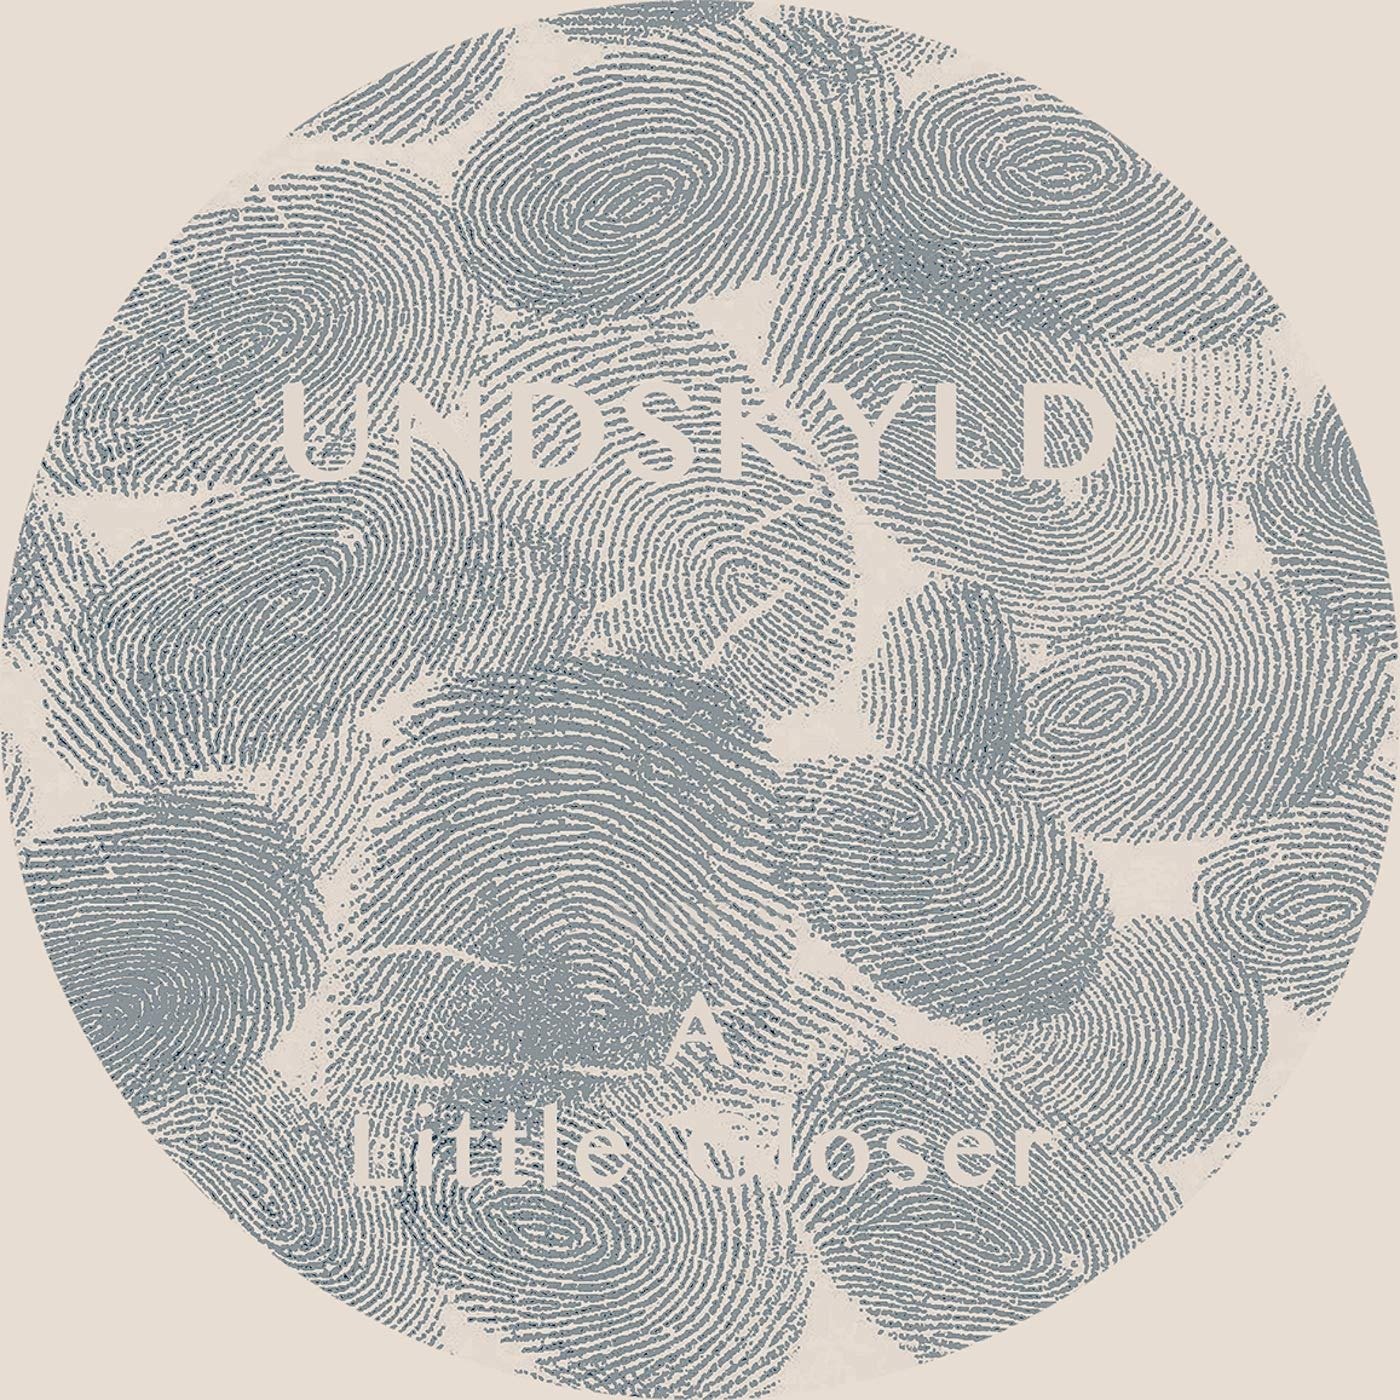 CD Shop - UNDSKYLD A LITTLE CLOSER